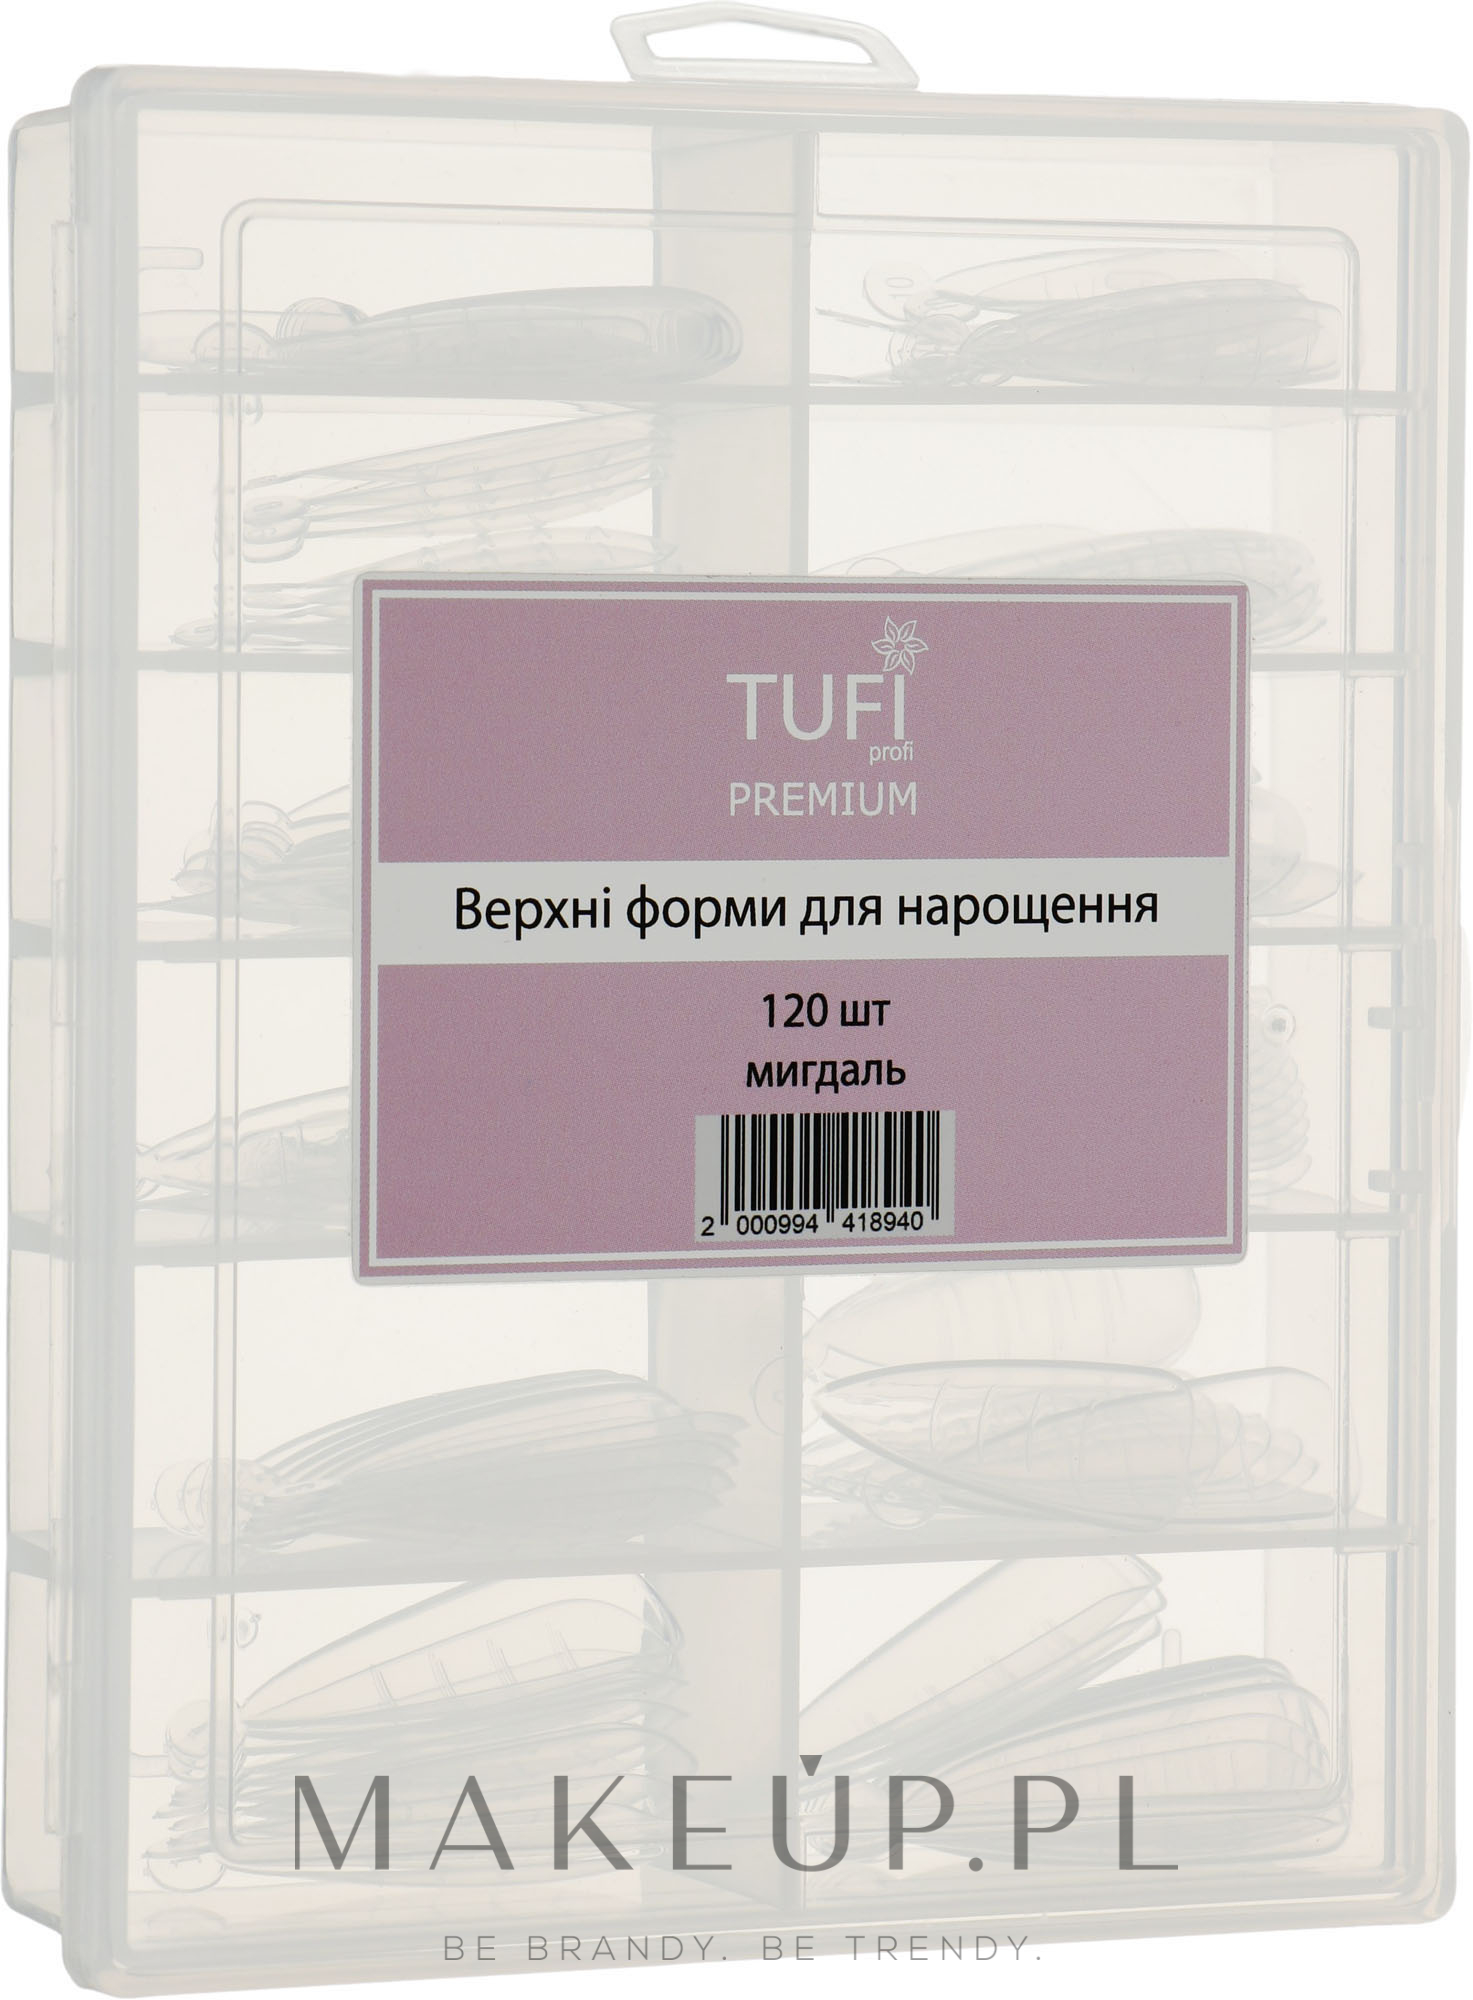 Formy do budowy paznokci Migdał, 120 szt. - Tufi Profi Premium — Zdjęcie 120 szt.